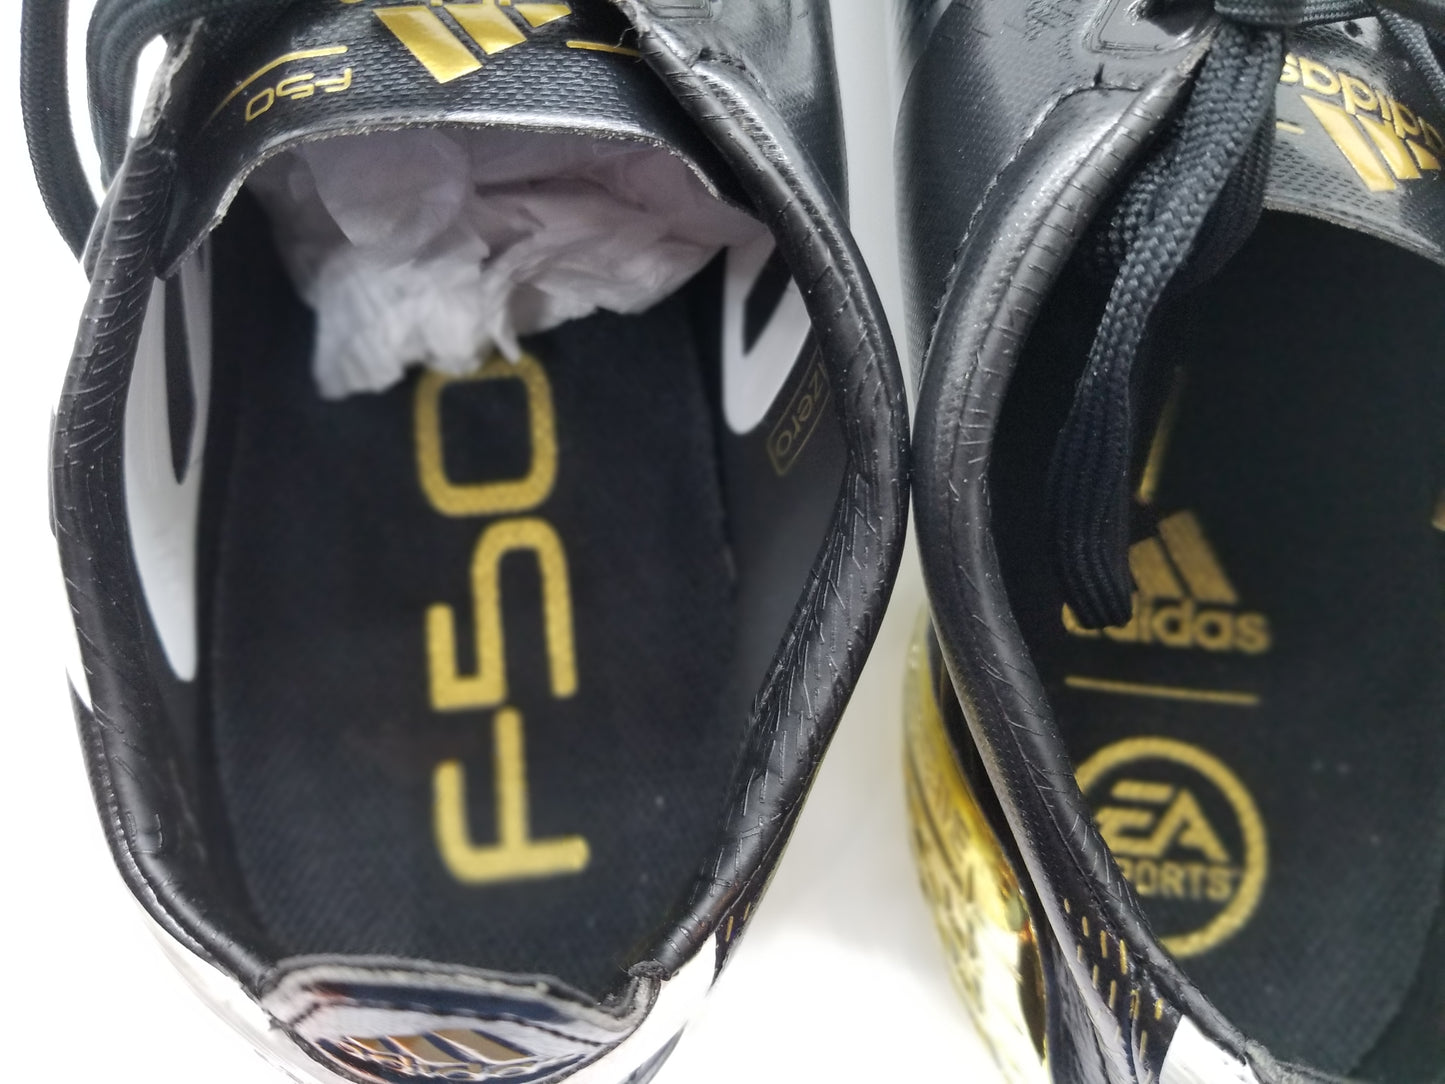 Adidas F50 Ghosted Adizero 'EA LEGENDS' FG